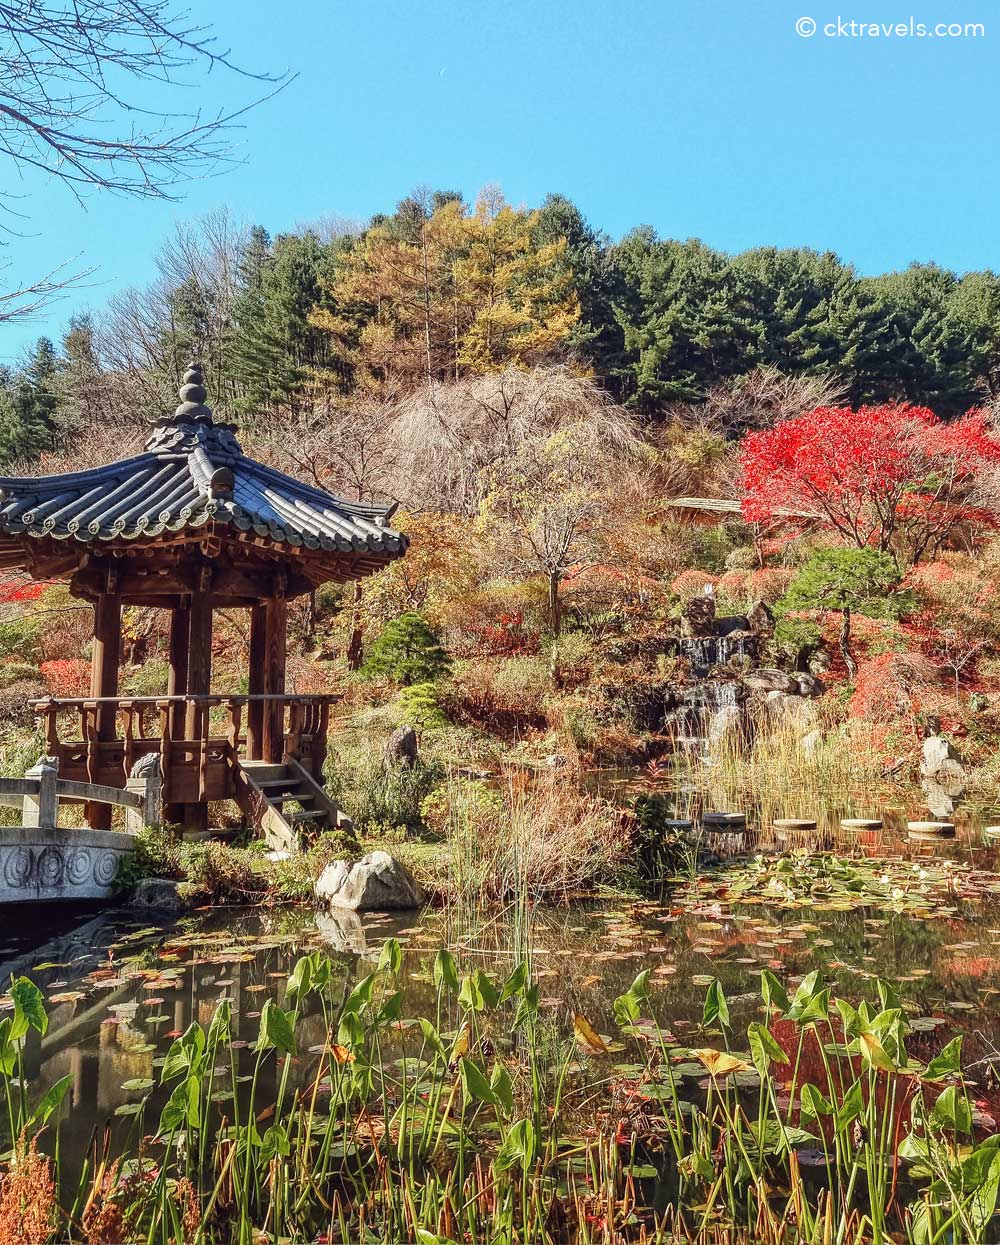 Korean Garden and Korean House. The Garden of Morning Calm near Seoul, South Korea